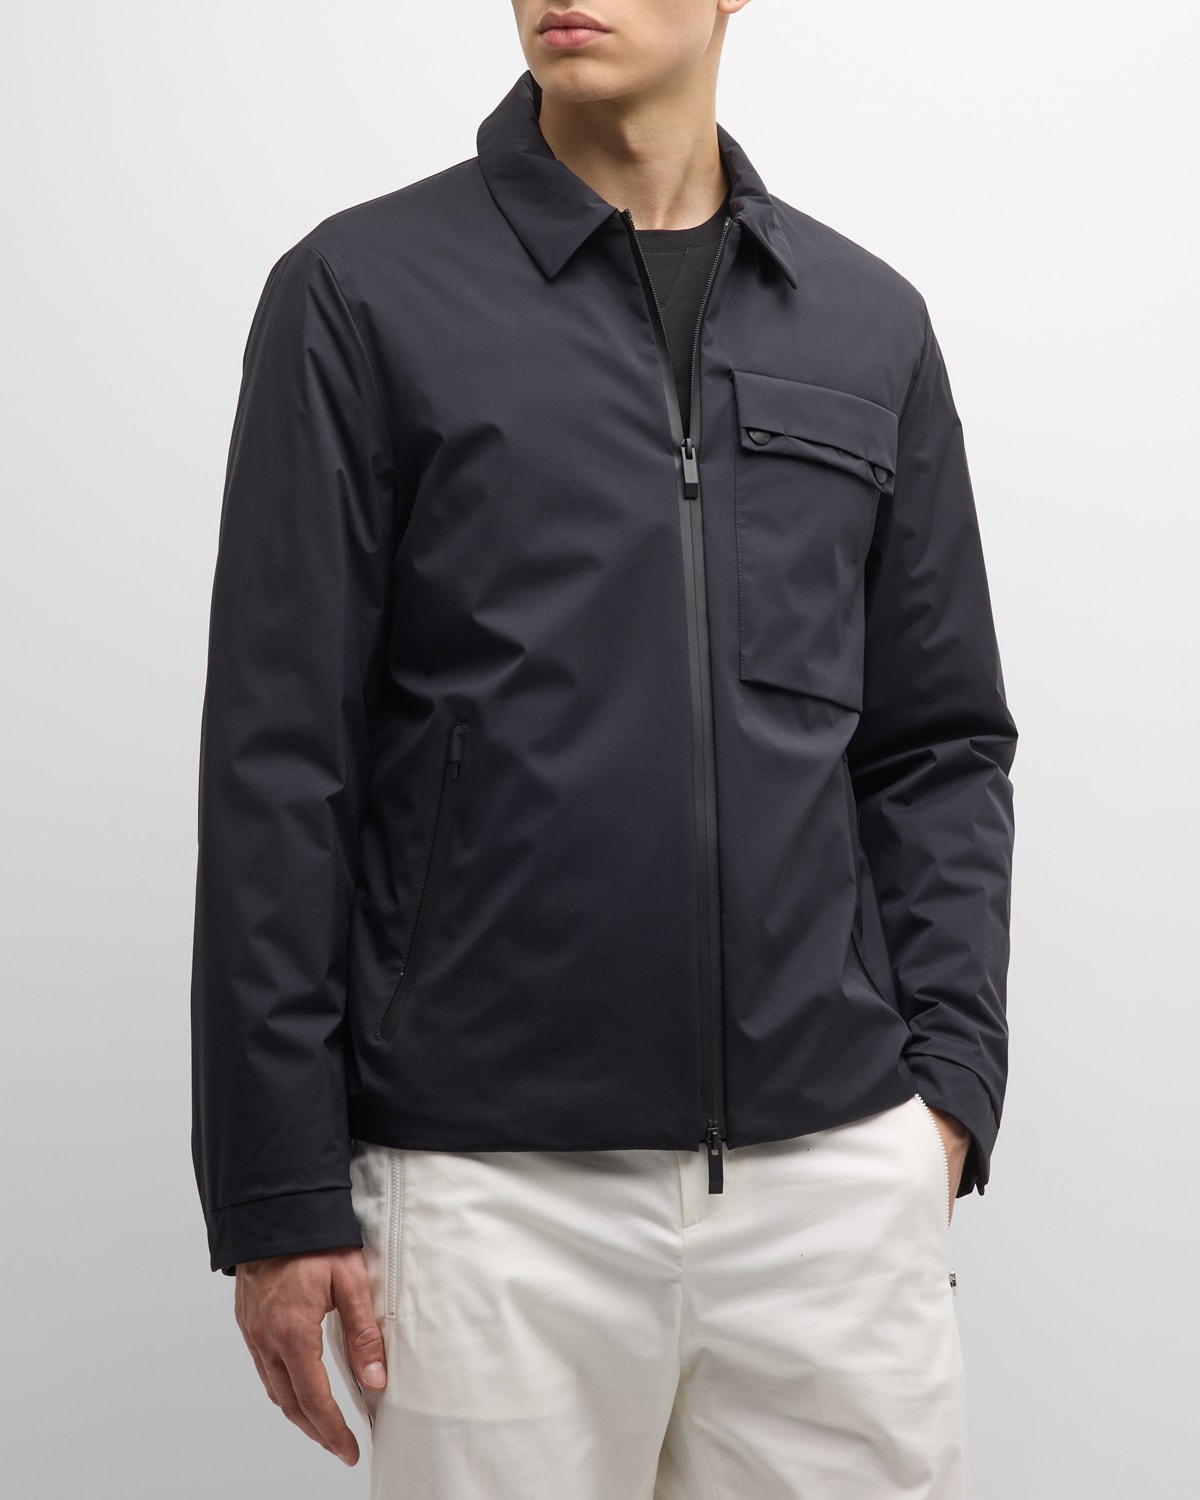 Moncler Men's Tortisse Shirt Jacket In Black